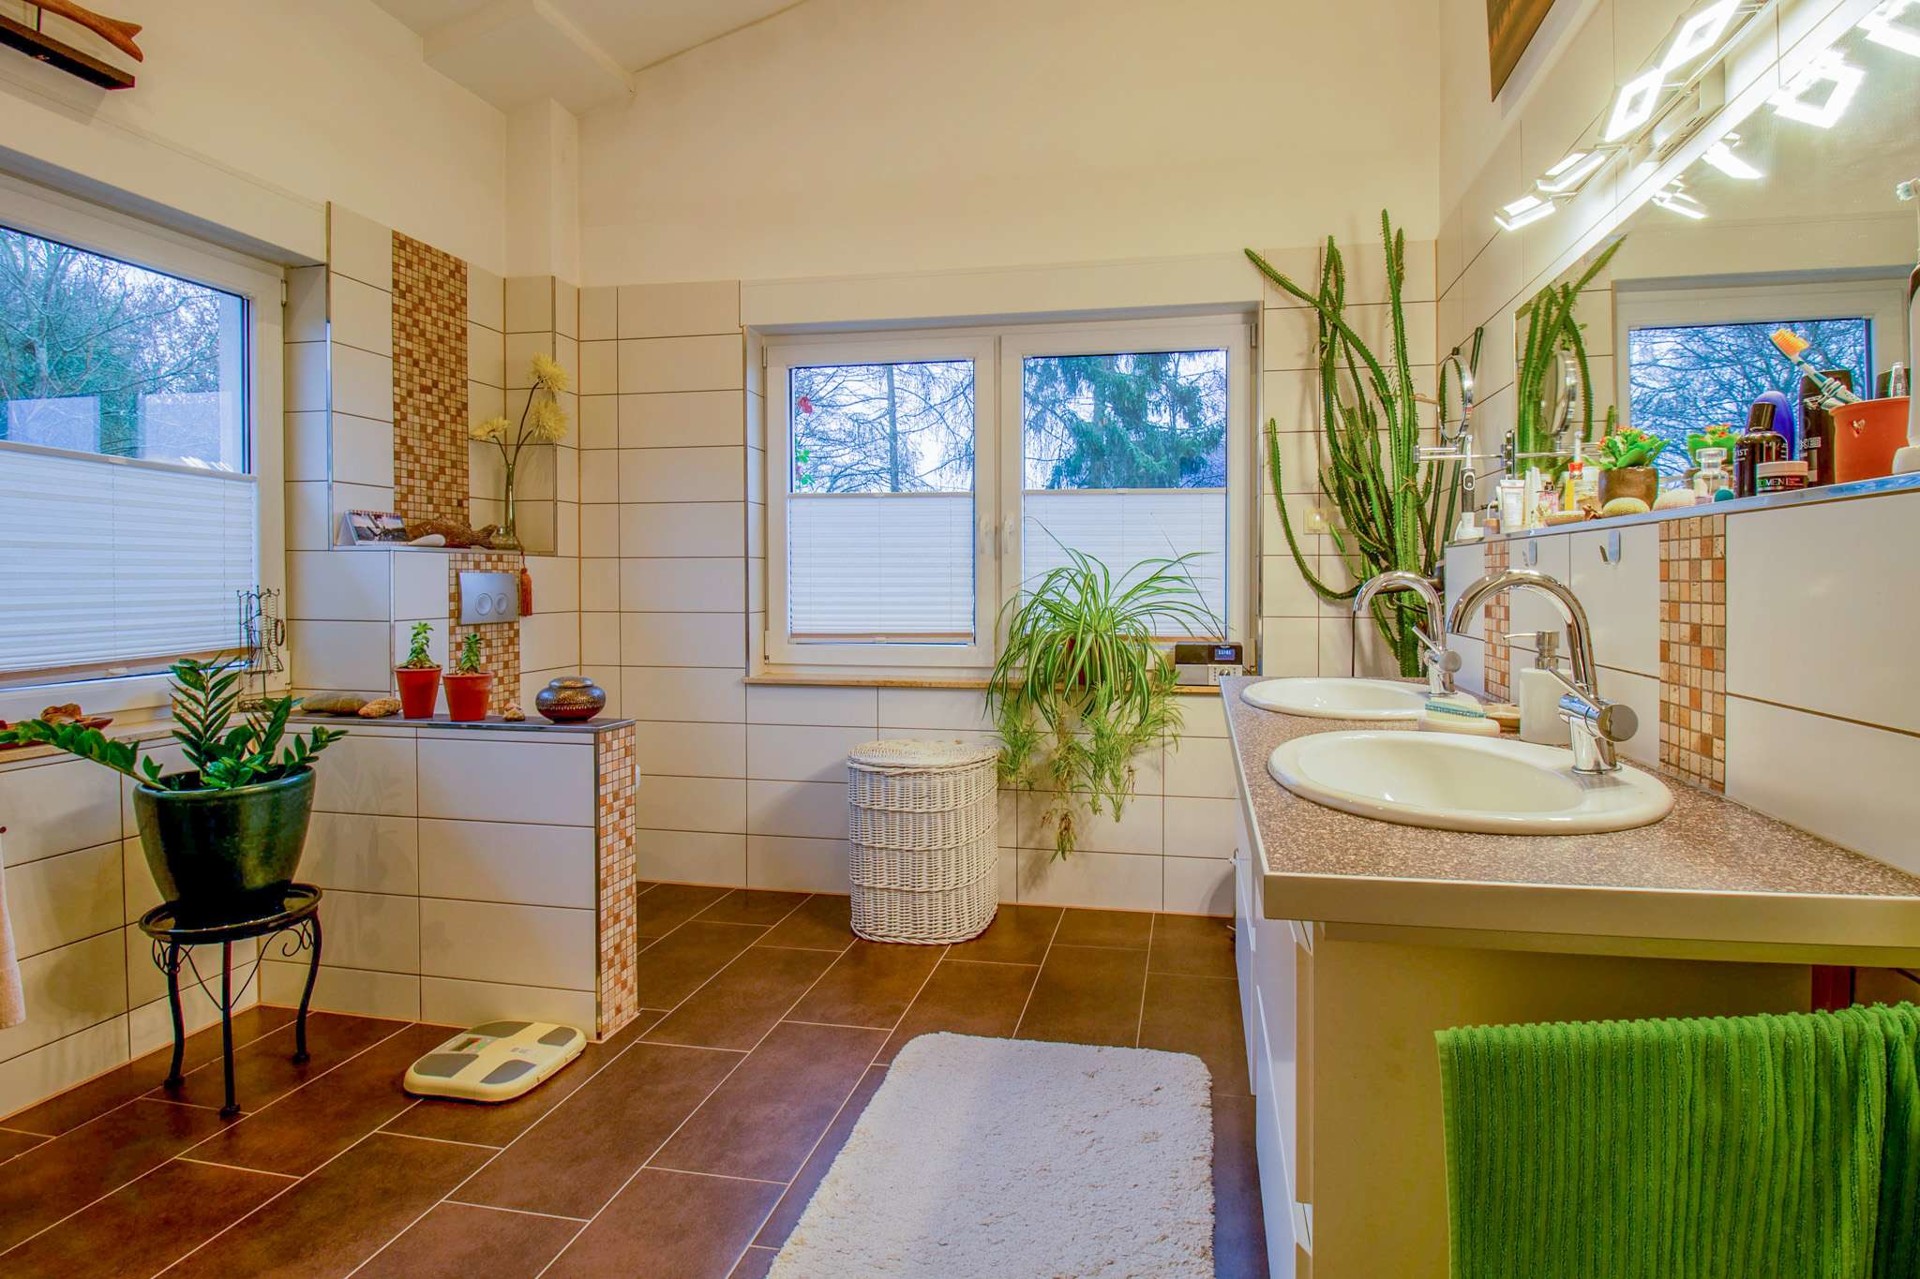 Saniertes Einfamilienhaus mit traumhafter Gartenanlage - Badezimmer 1